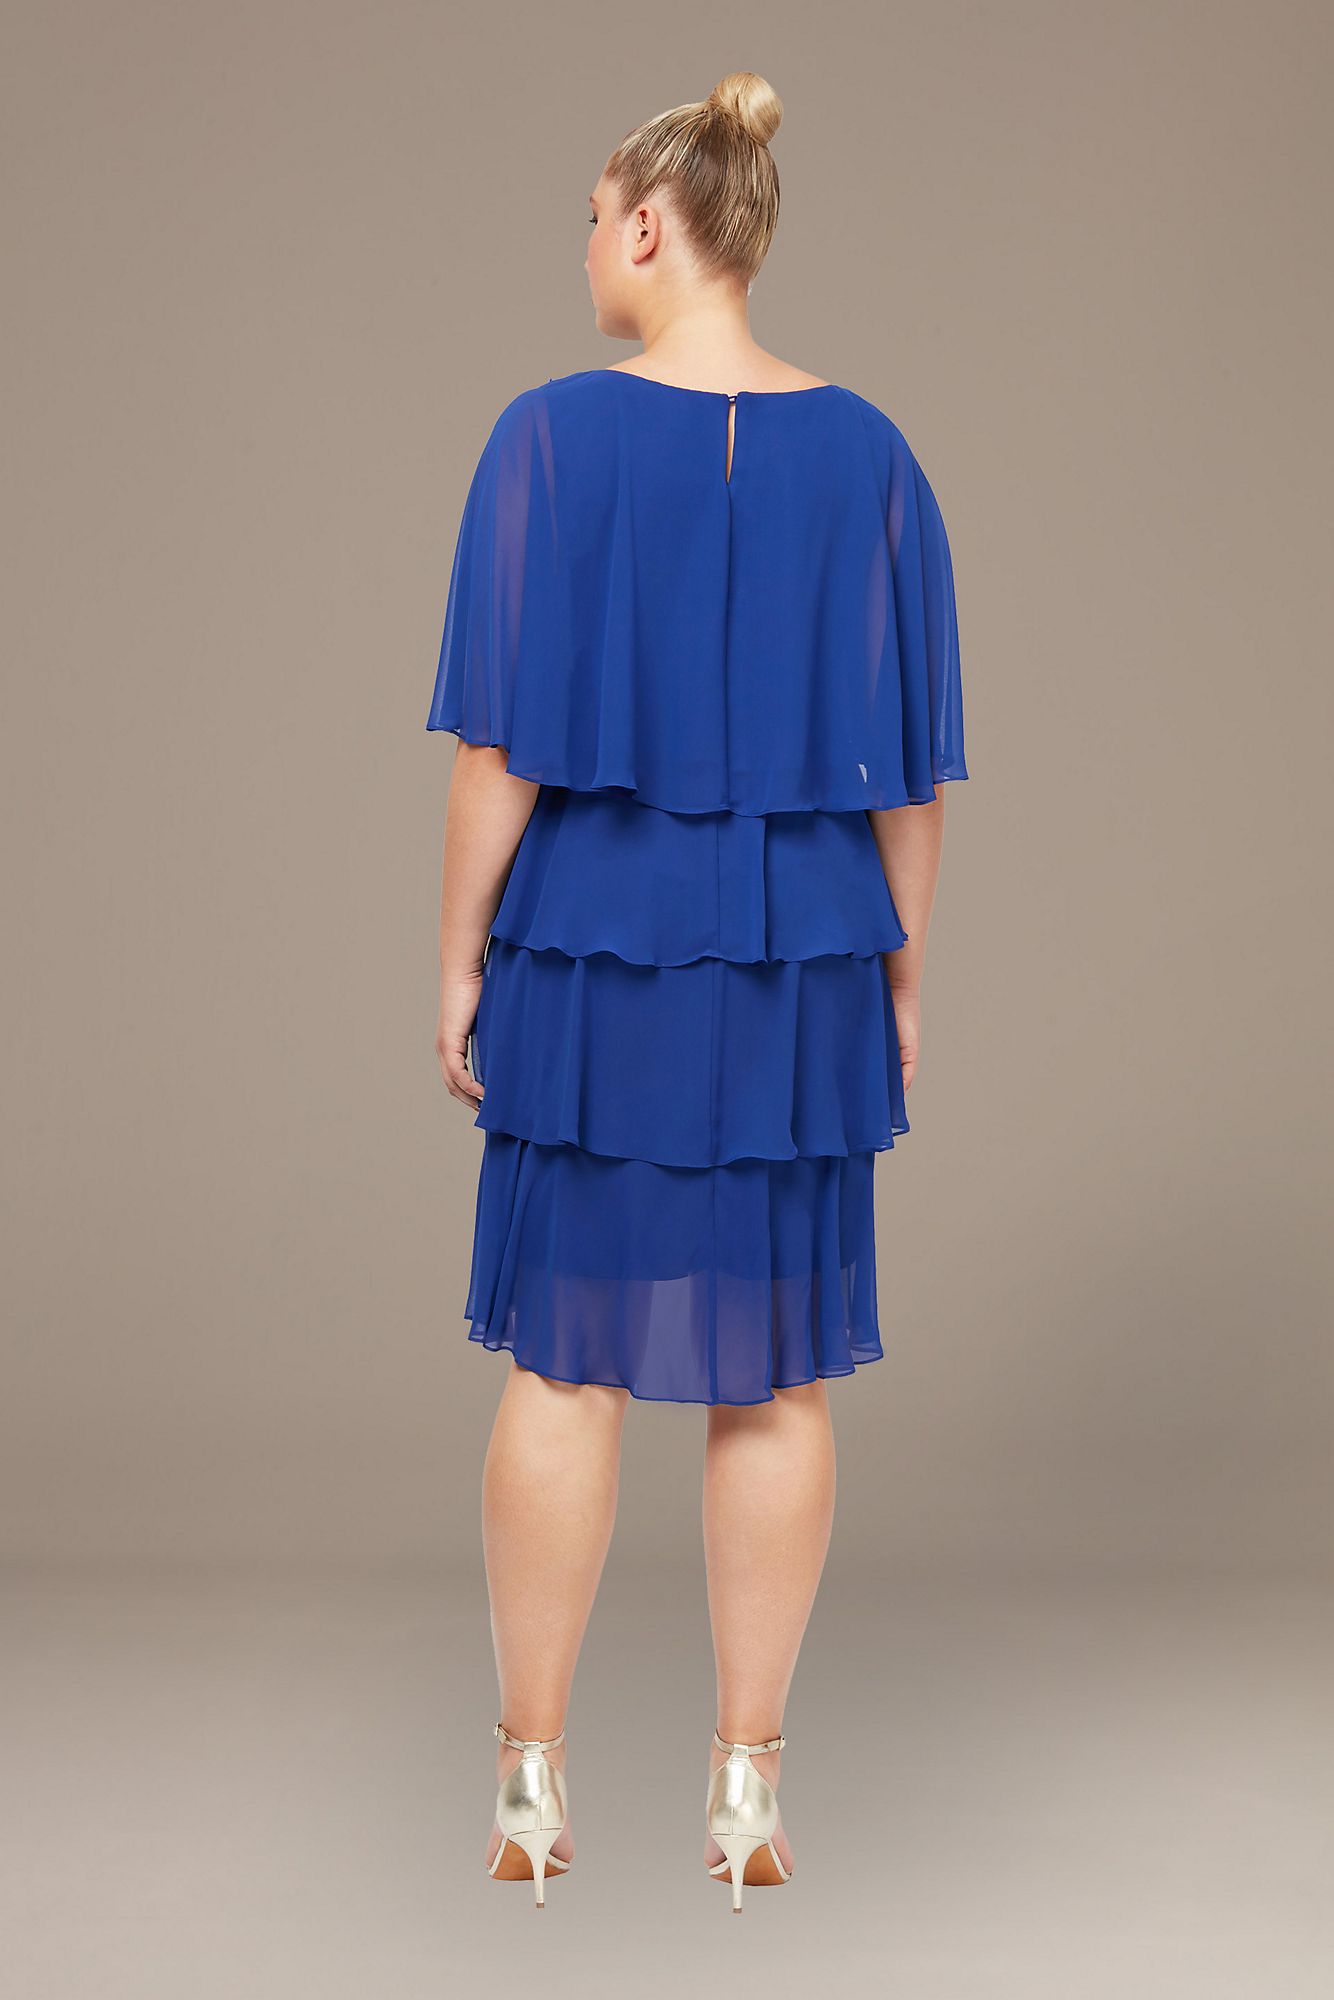 Plus Size Embellished Shoulder Tiered Dress SL Fashions 614275